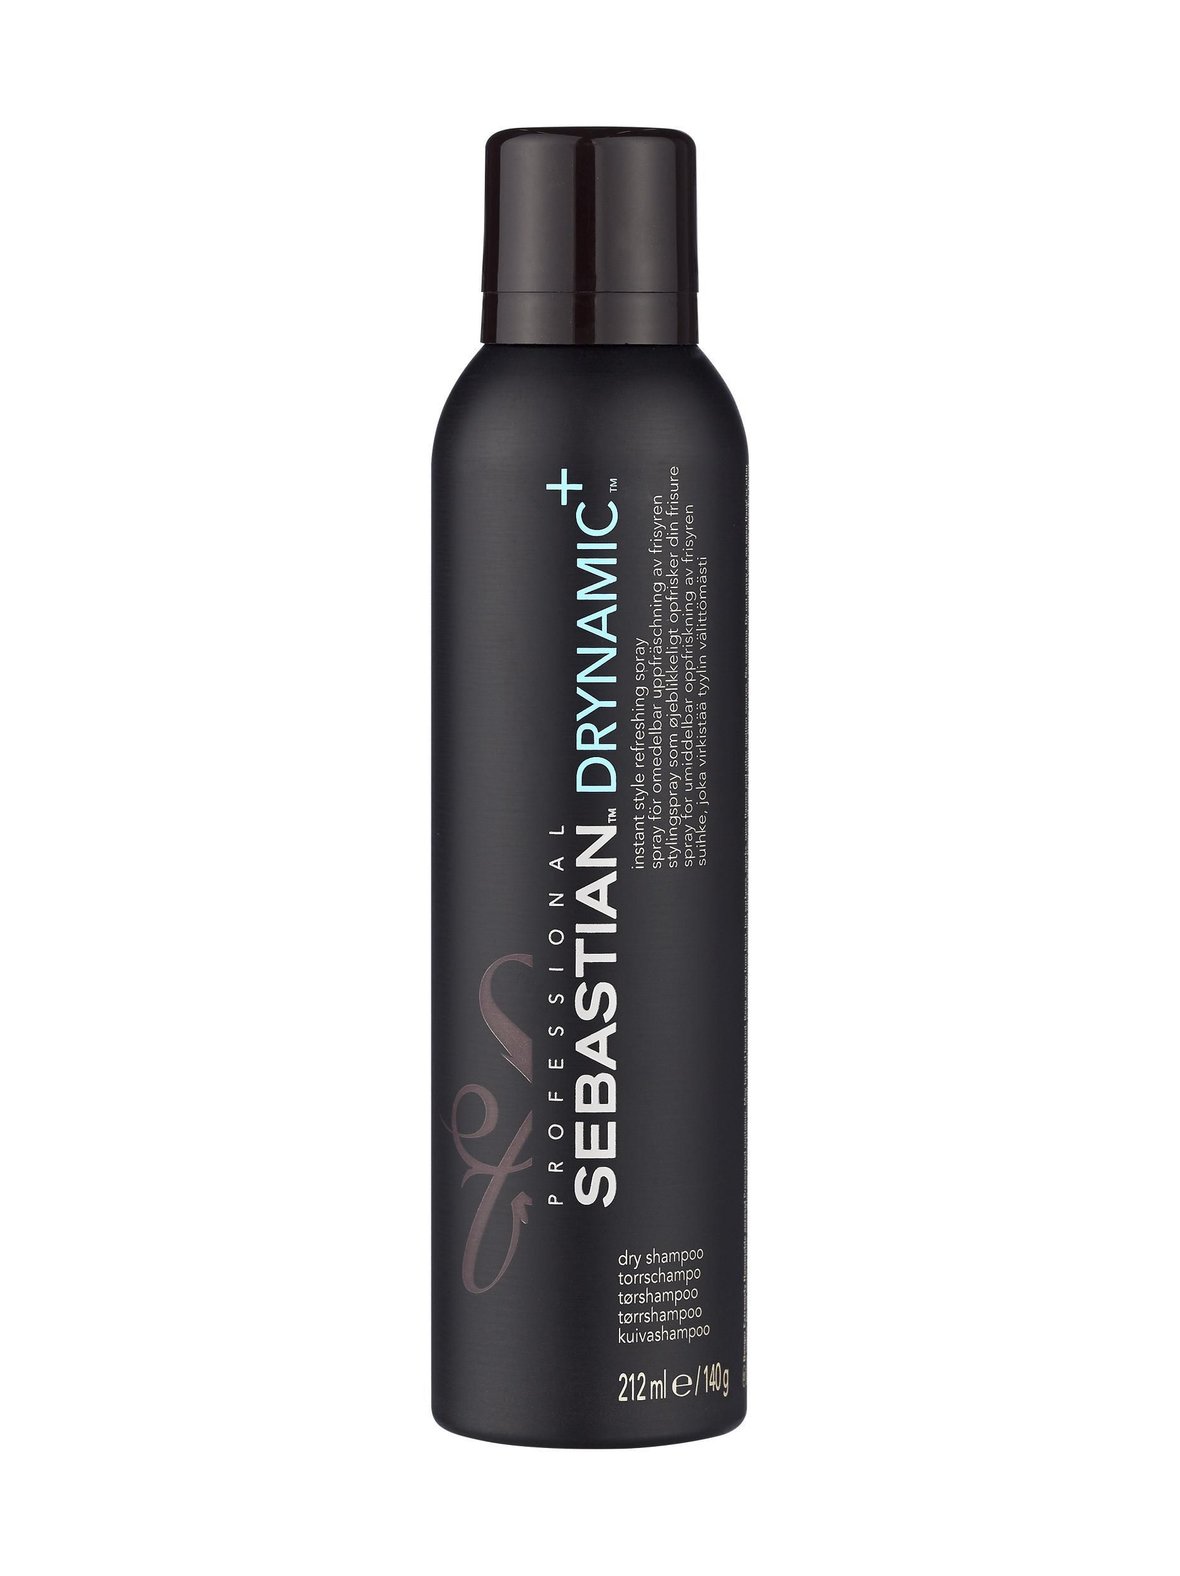 Drynamic Dry Shampoo -kuivasampoo 200 ml, Sebastian